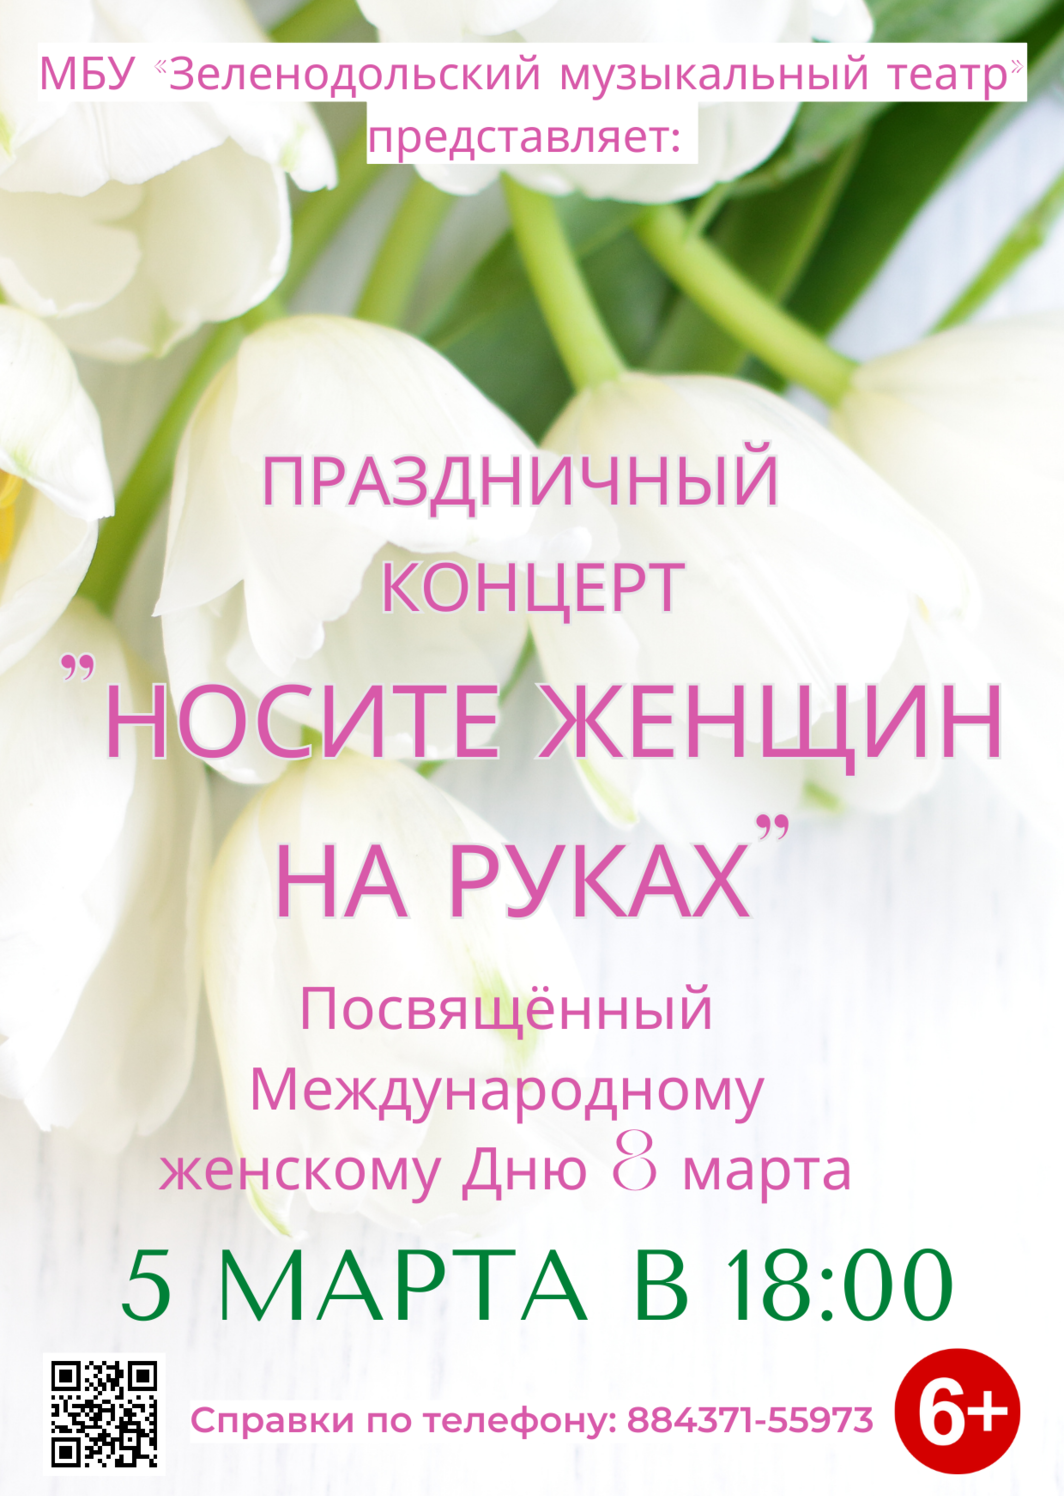 Концерт, посвящённый Международному женскому Дню 8 марта, состоится 5 марта в 18:00